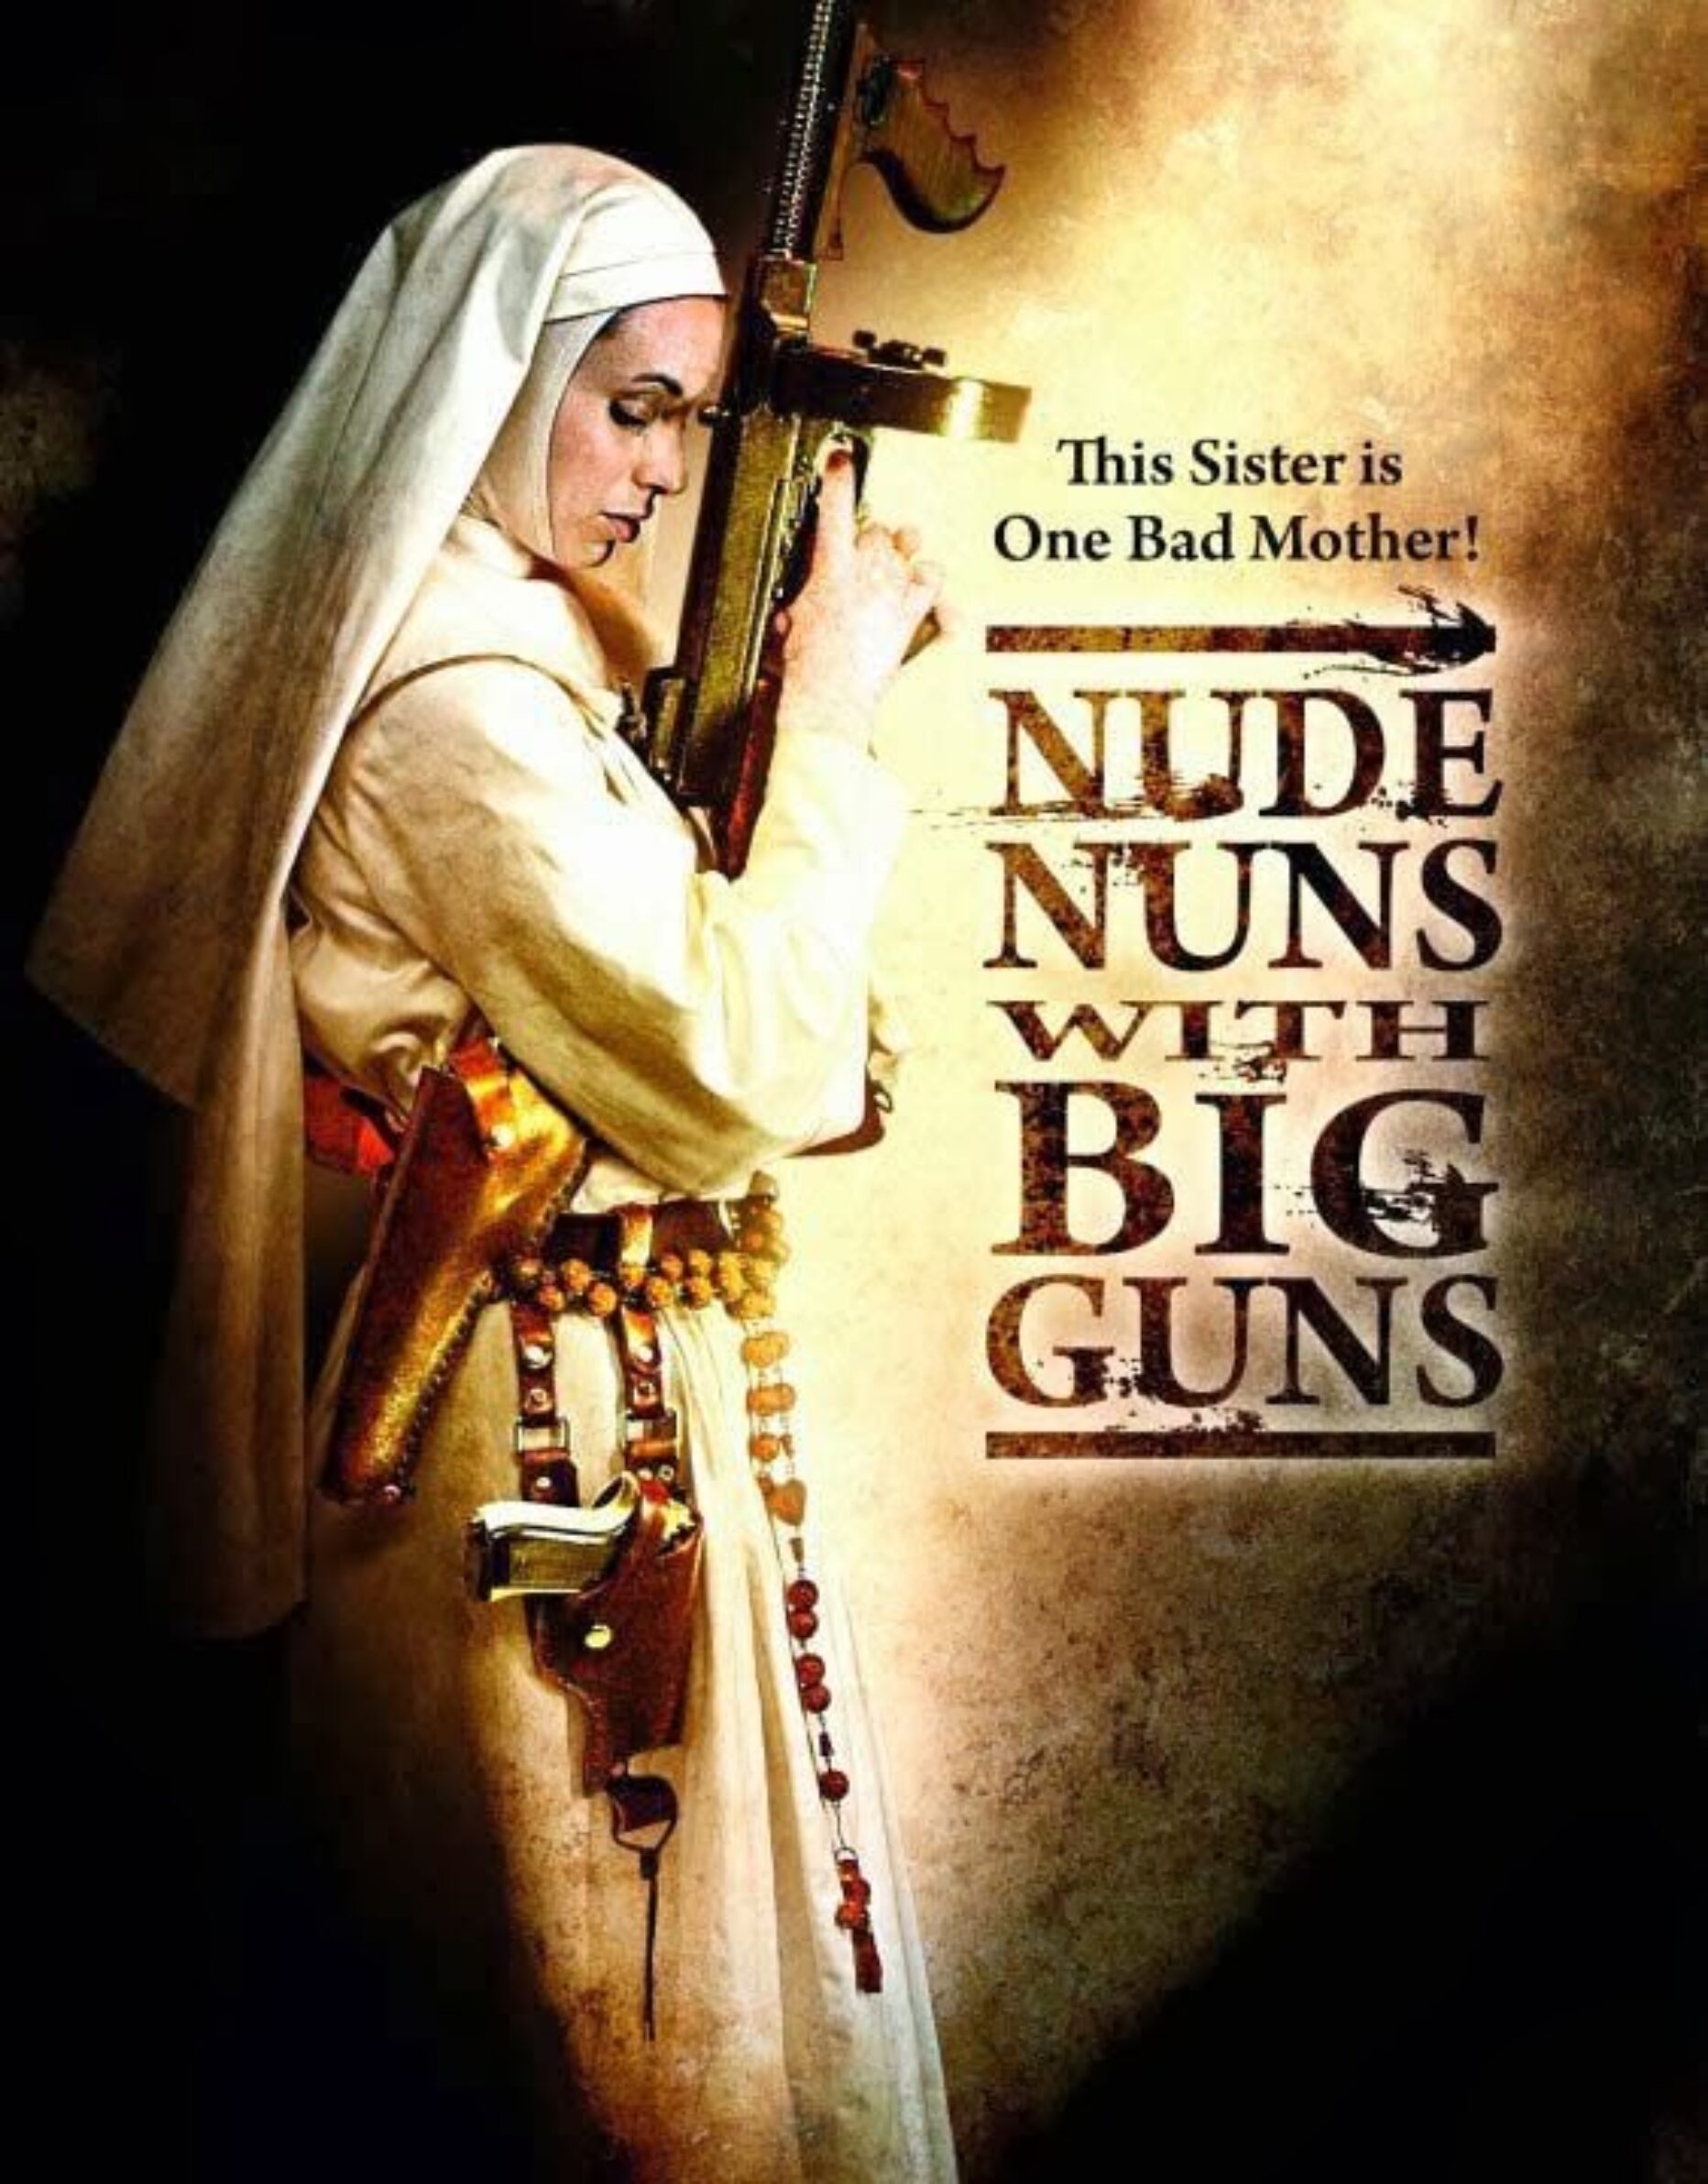 Nude nuns with big guns, ovvero il titolo dice tutto!